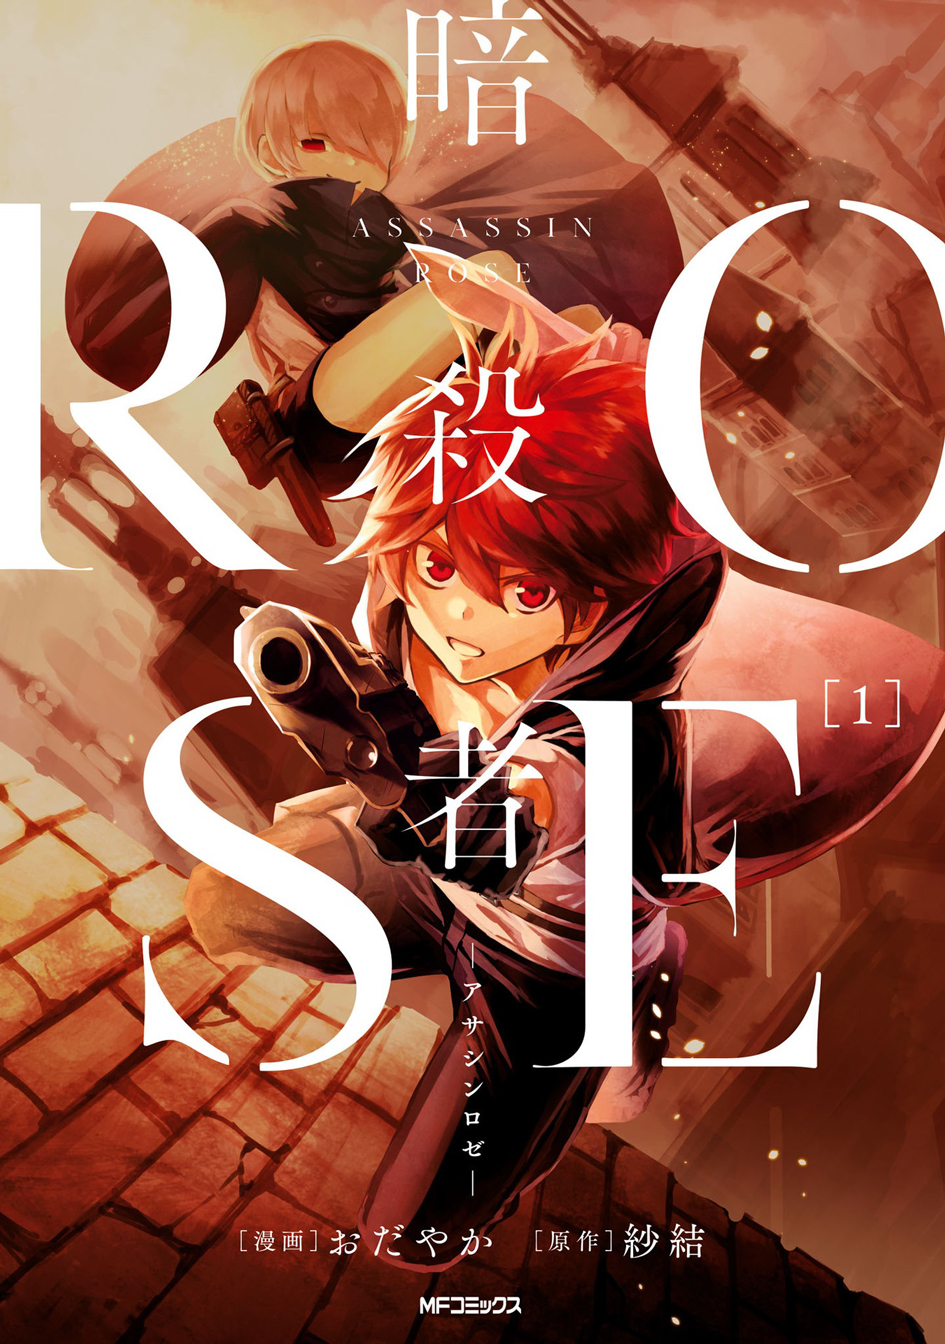 assassin-rose